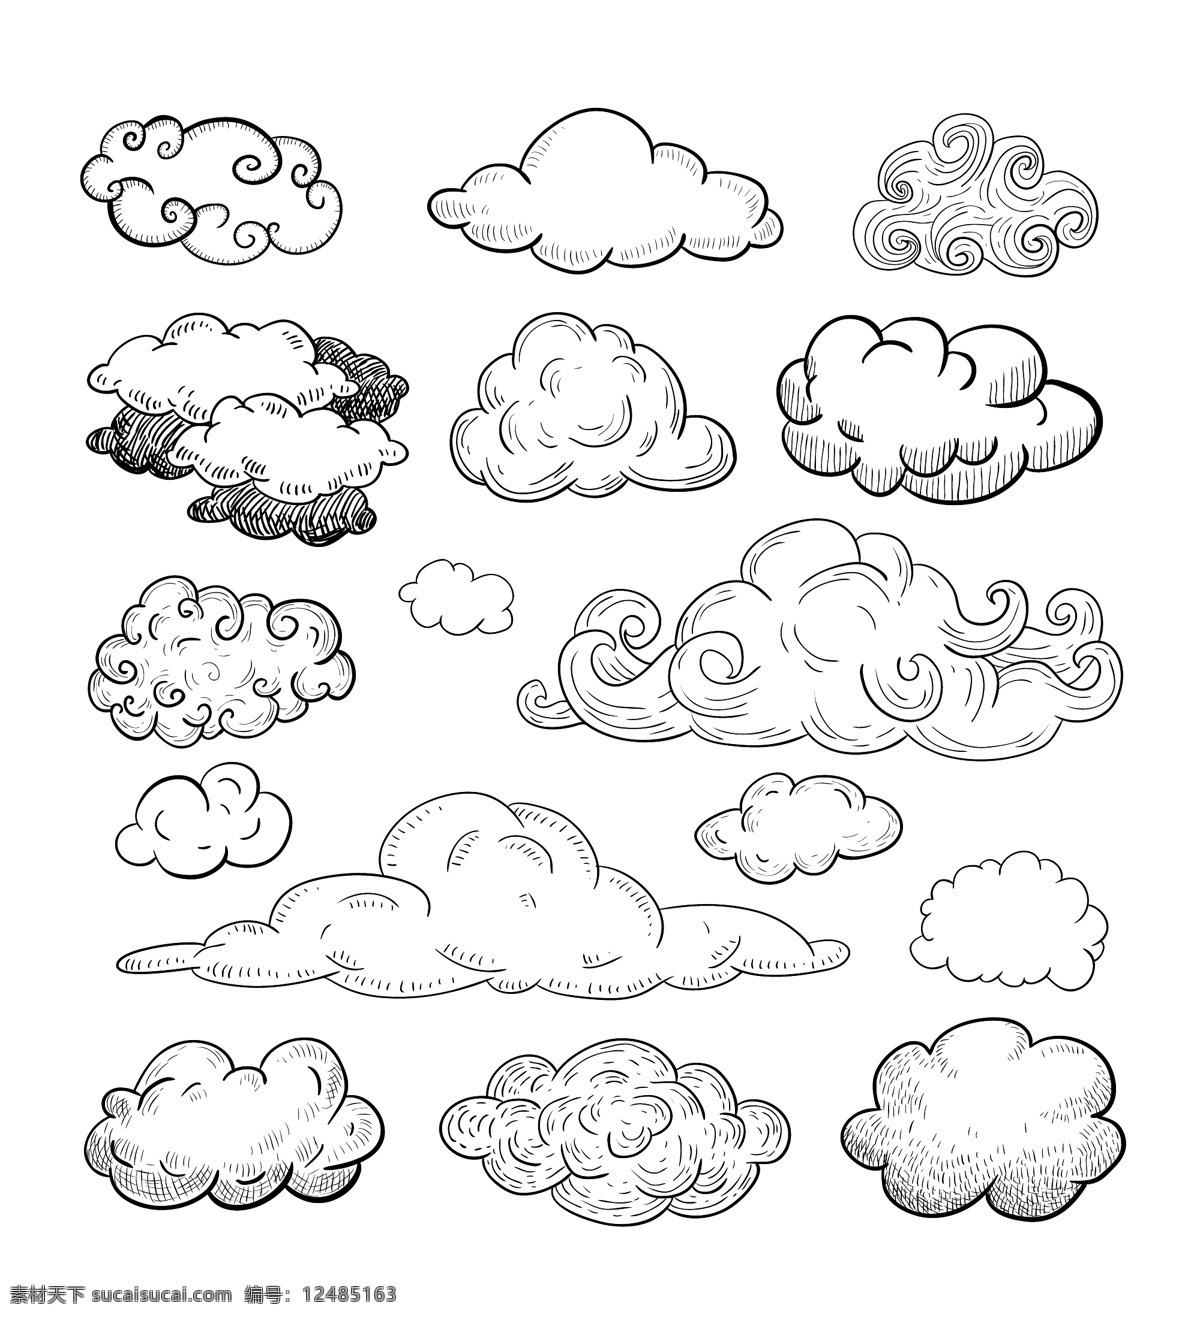 手绘云朵云彩 手绘云彩 云朵 手绘 手绘云朵 手绘热气球 云彩云朵素材 单个 元素 矢量 素